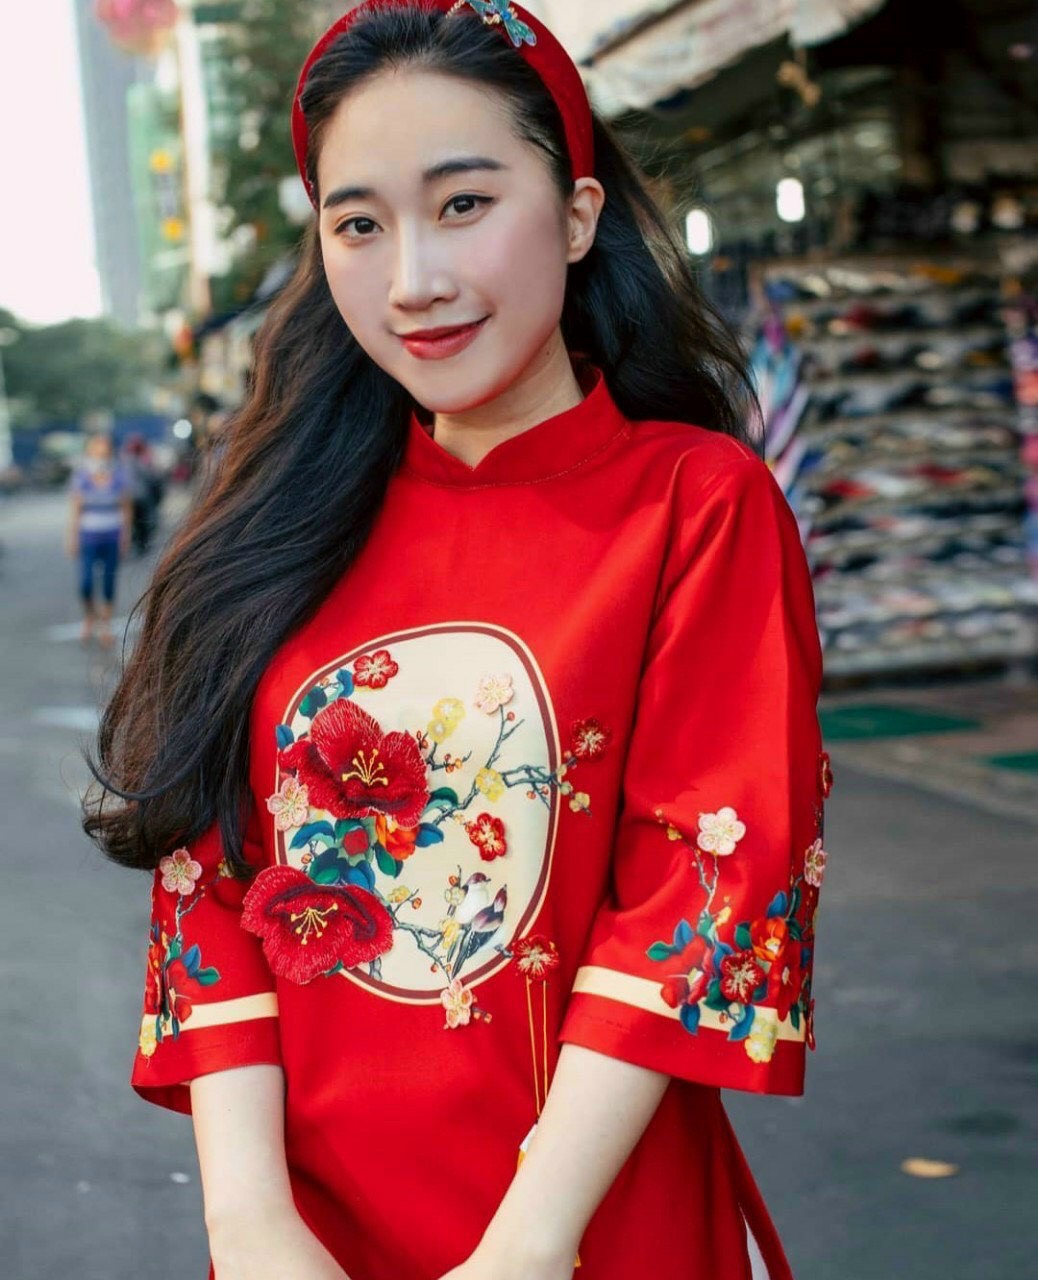 Tết mặc váy đỏ chứng tỏ may mắn | Bộ sưu tập do Chychyyy đăng | Lemon8